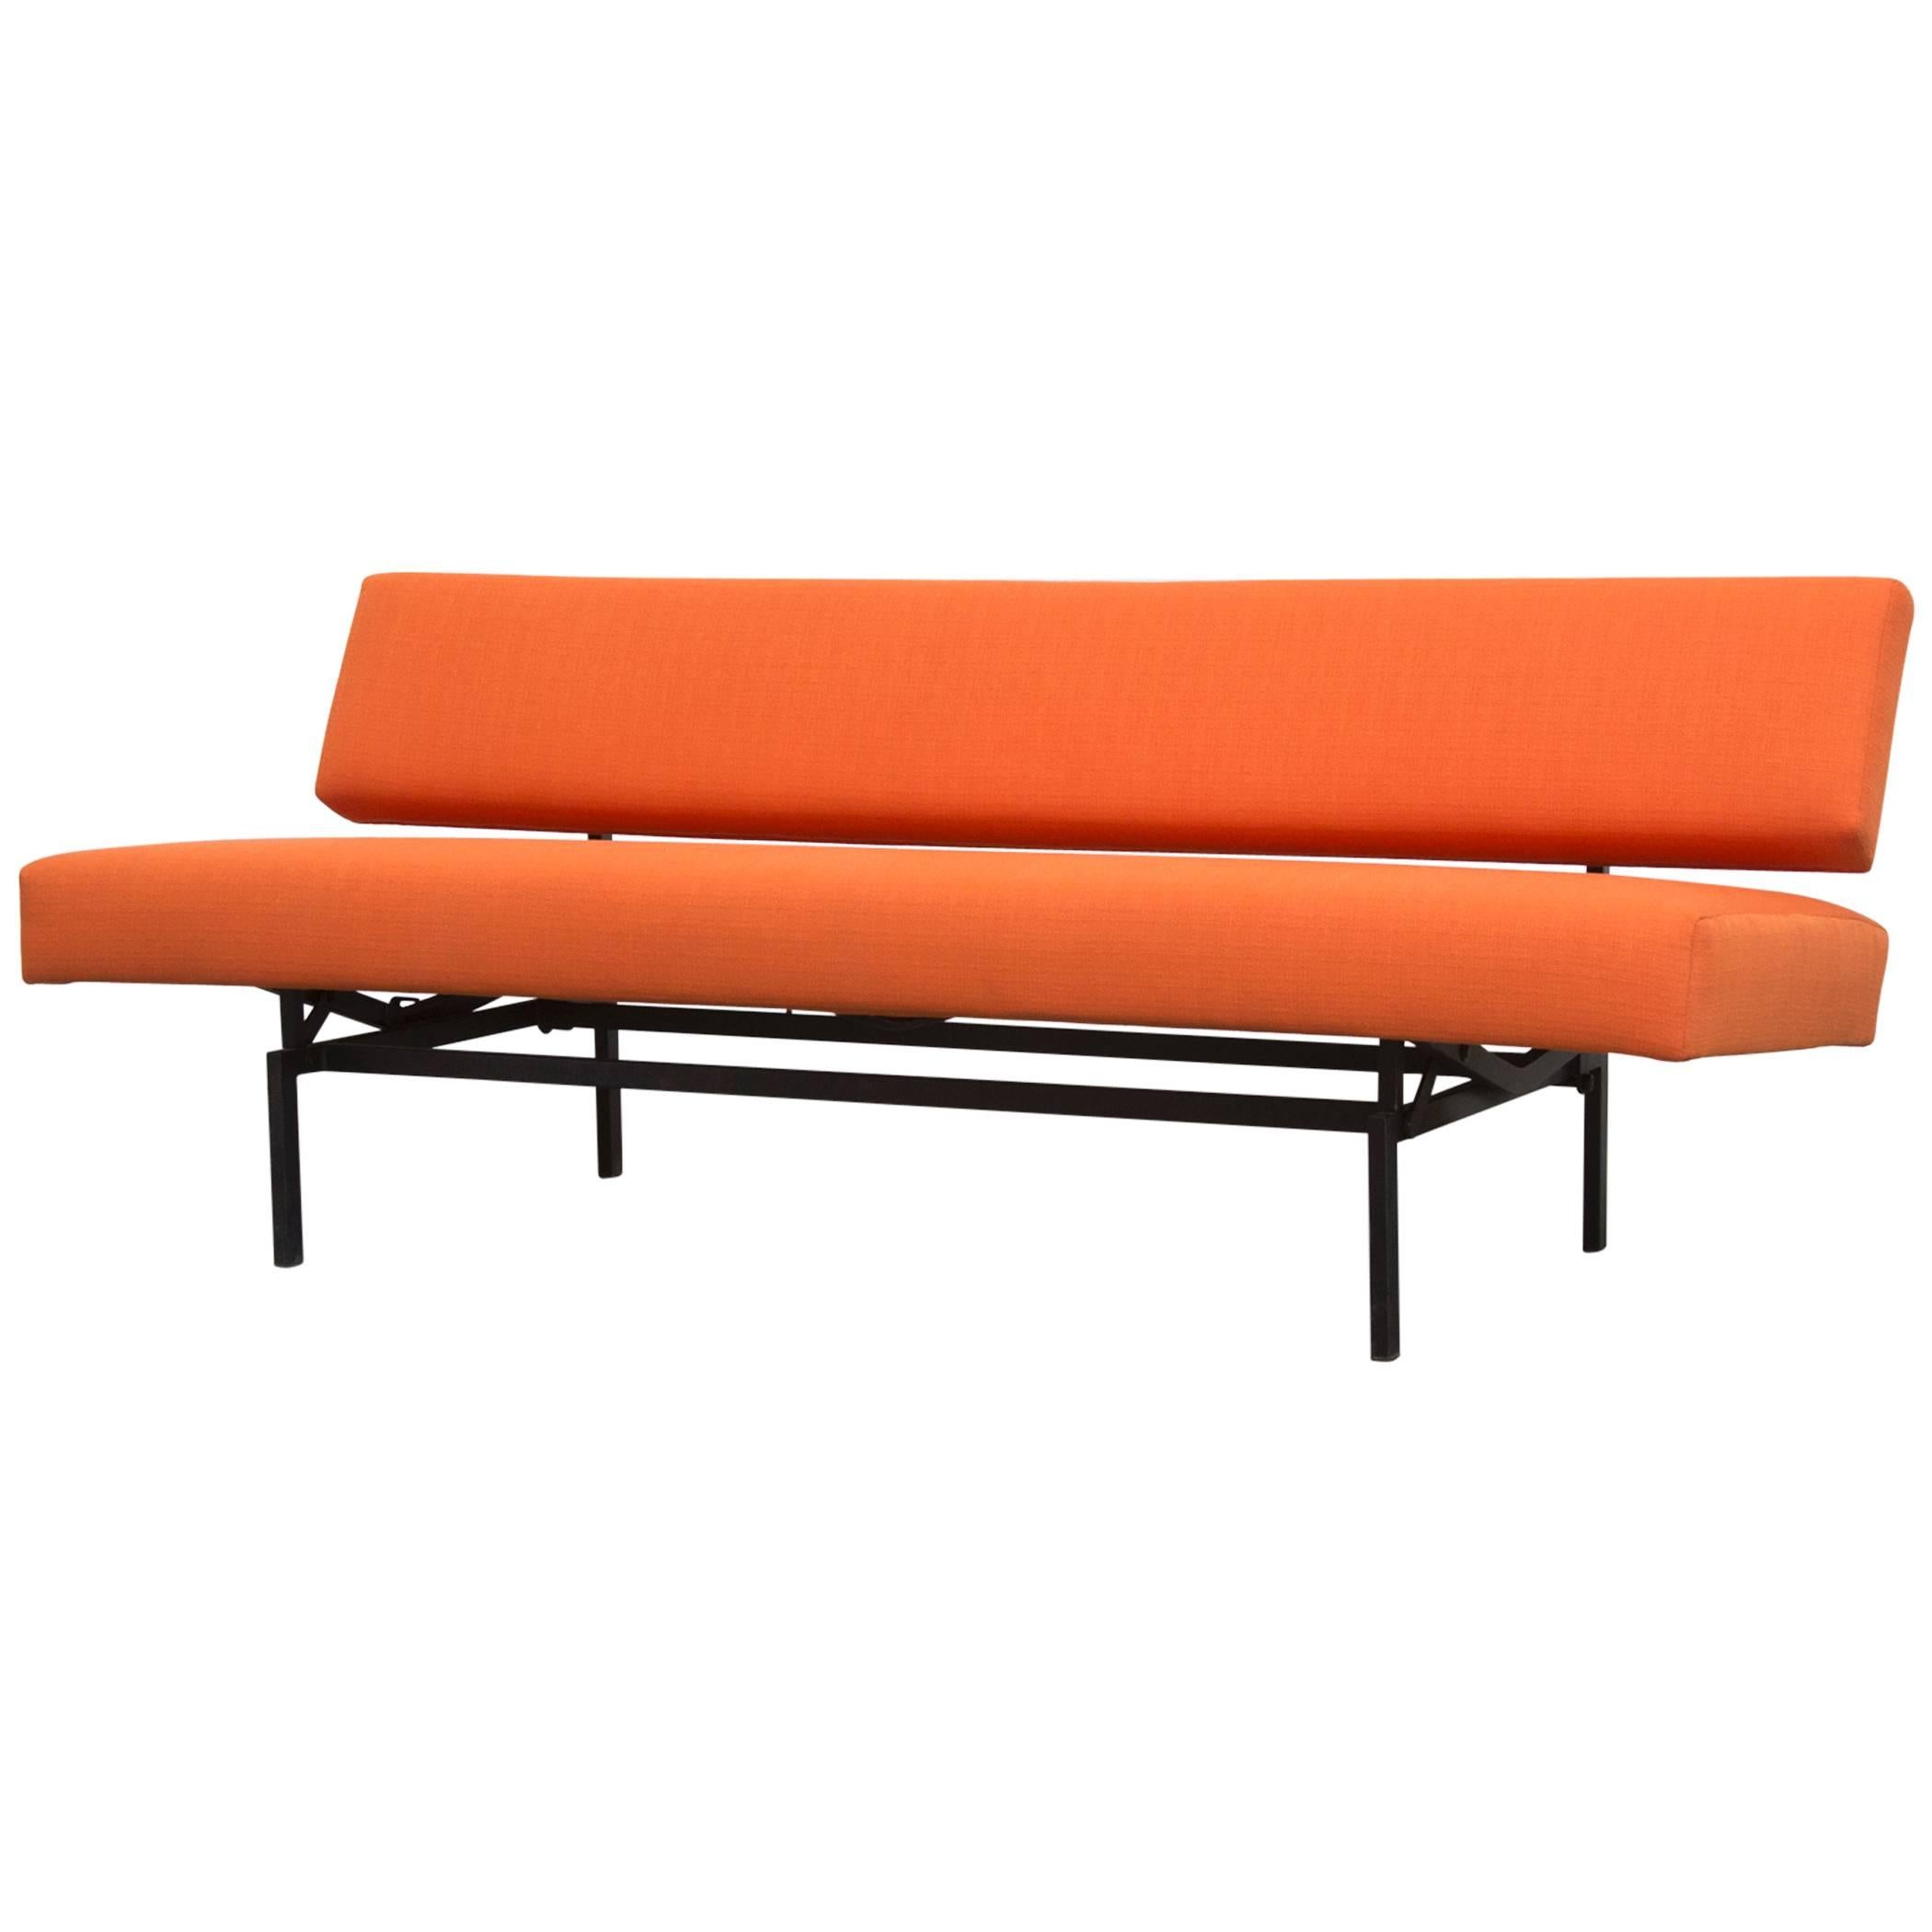 Streamline Sleeper Sofa in the style of Martin Visser